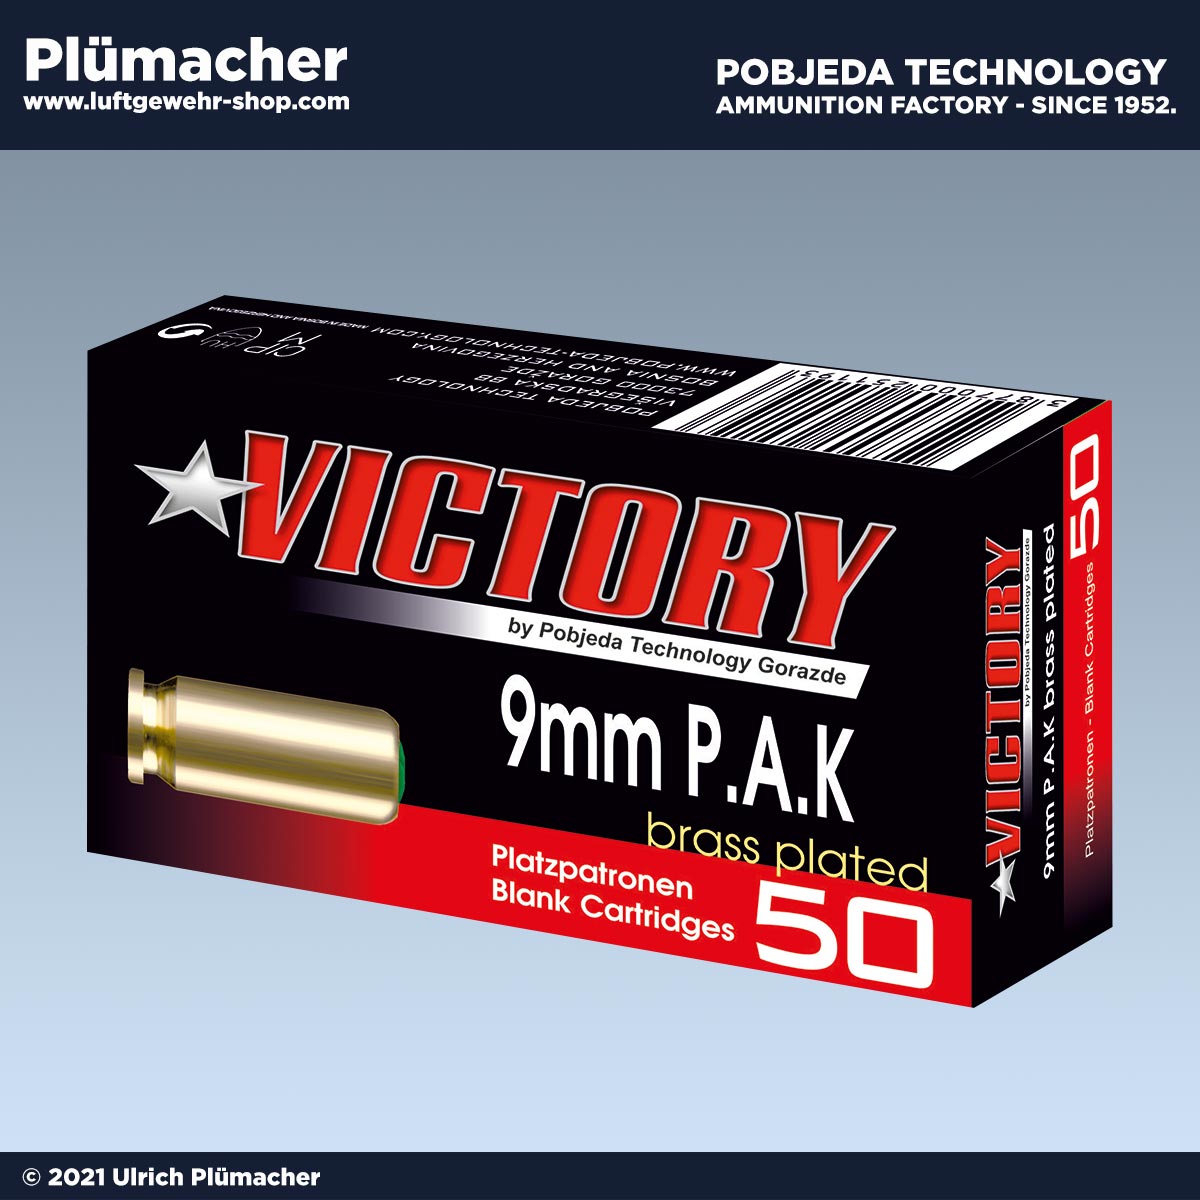 Platzpatronen Victory 9 mm P.A.K für Schreckschusspistolen und Gaspistolen mit Magazin. Extrem laute Knallpatronen.